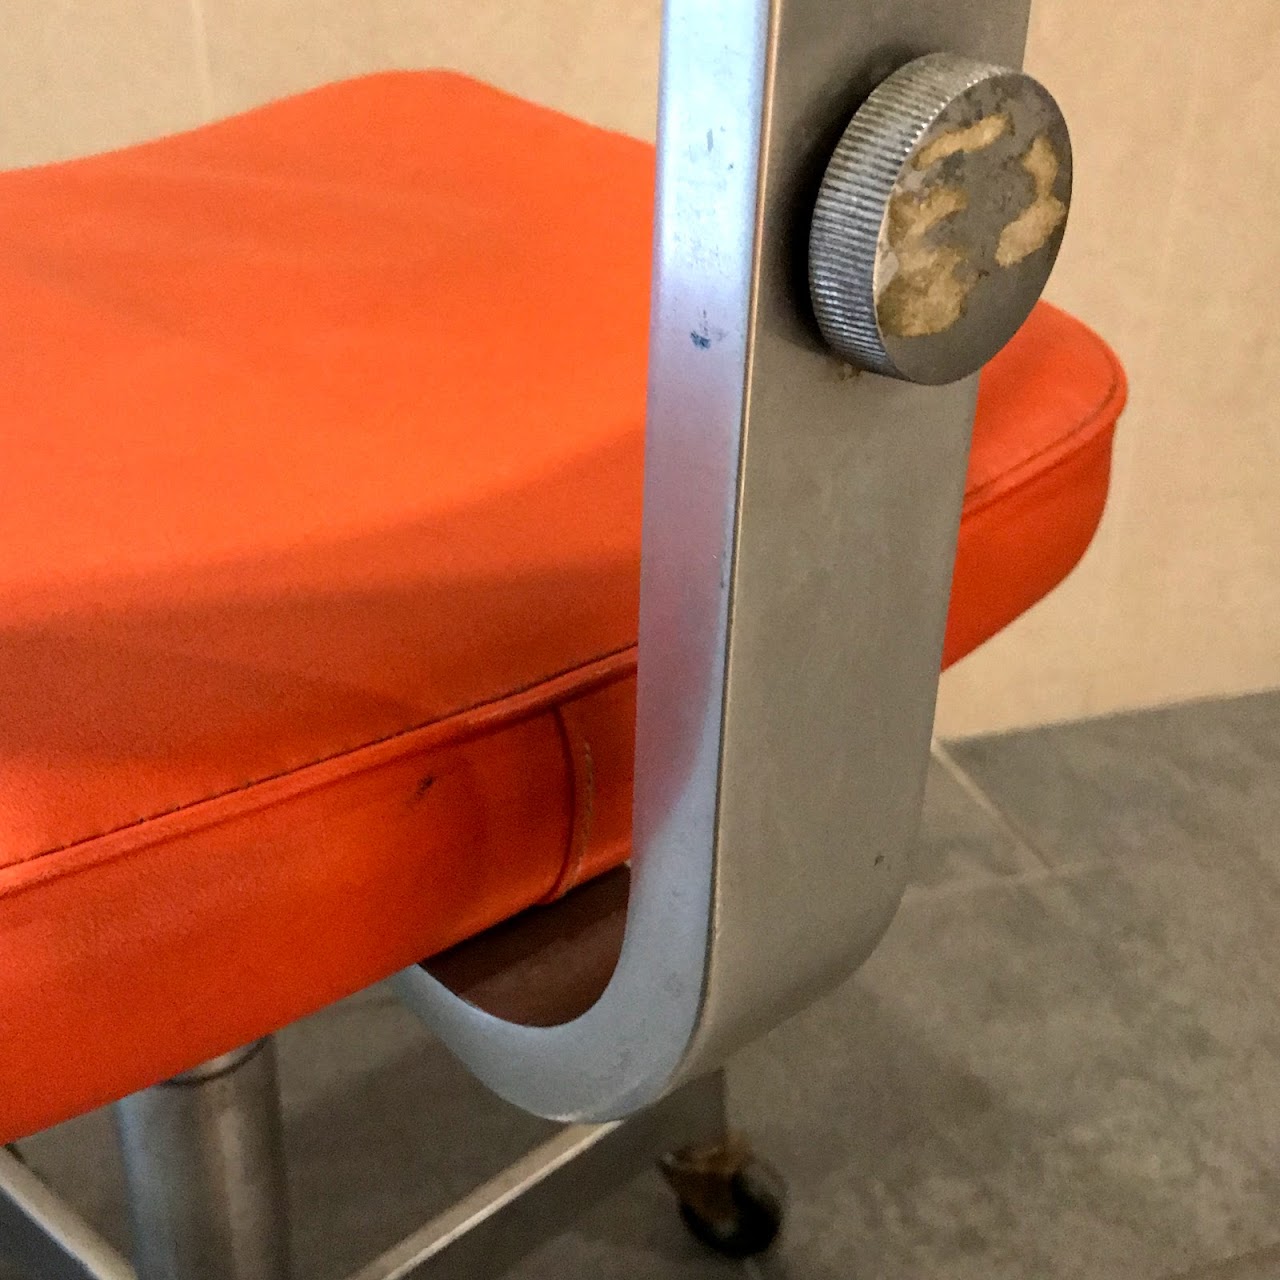 DoMore Vintage Industrial Task Chair